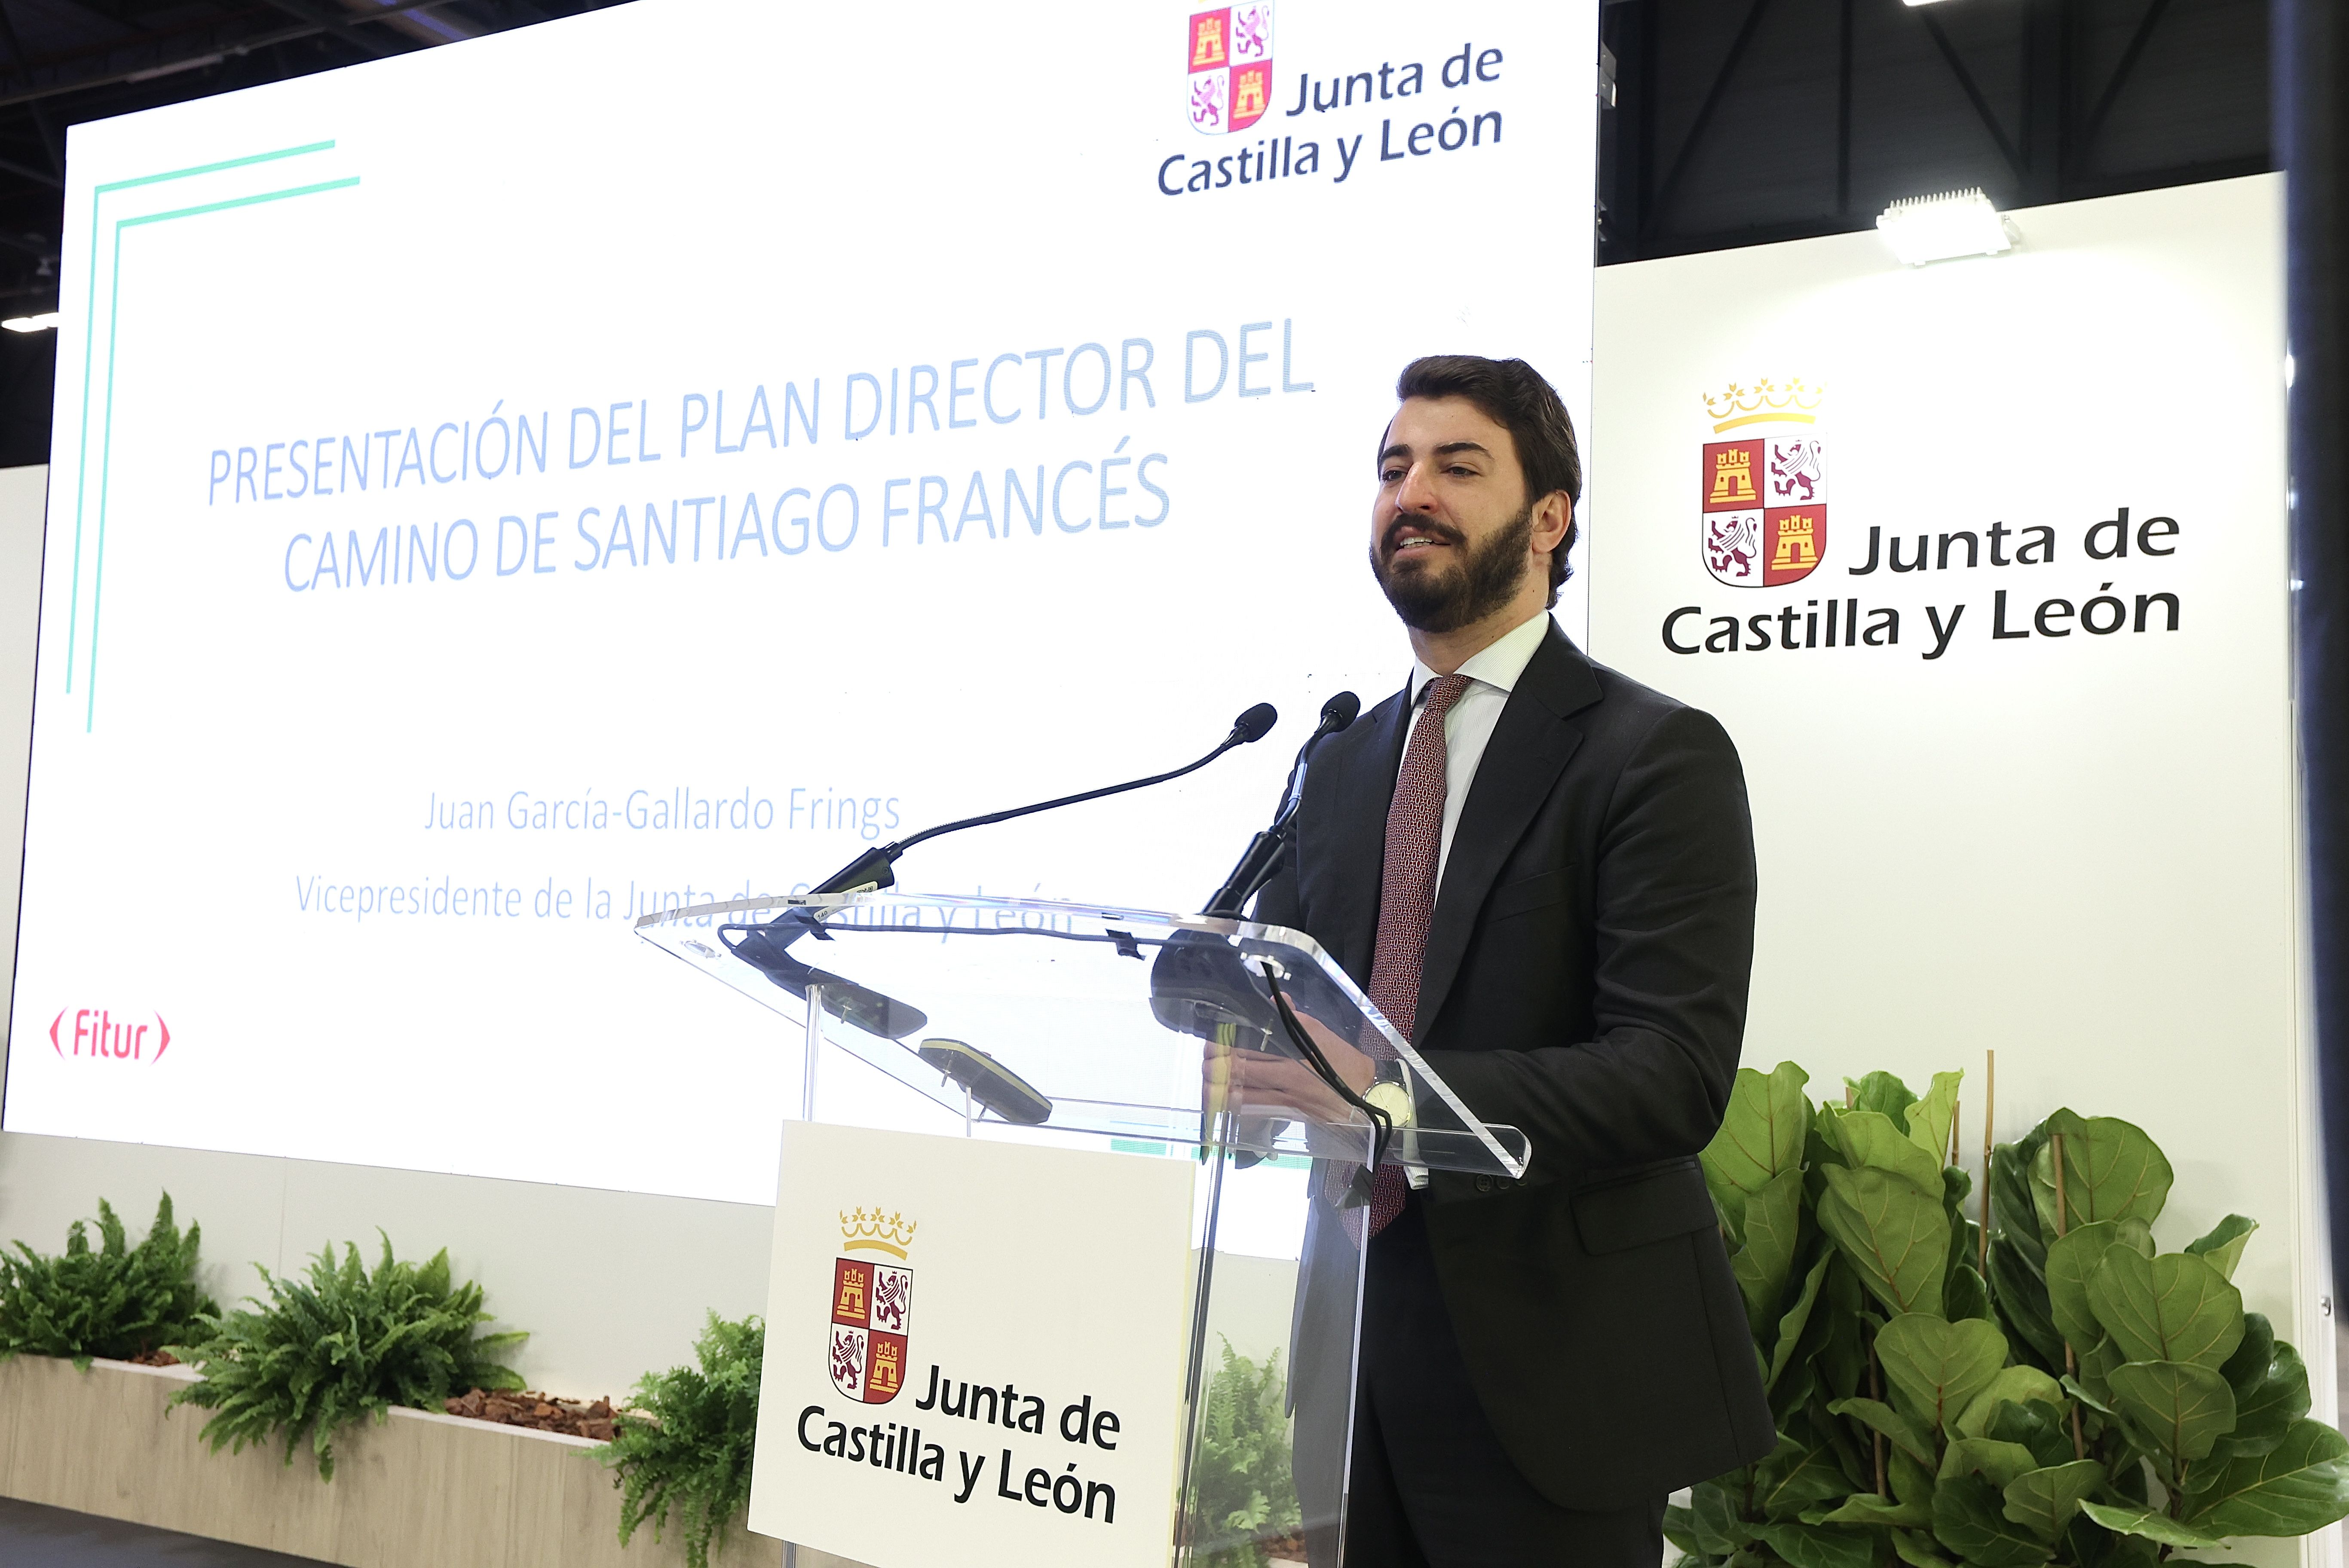  El vicepresidente de la Junta de Castilla y León, Juan García-Gallardo, presentó el plan director. | ICAL